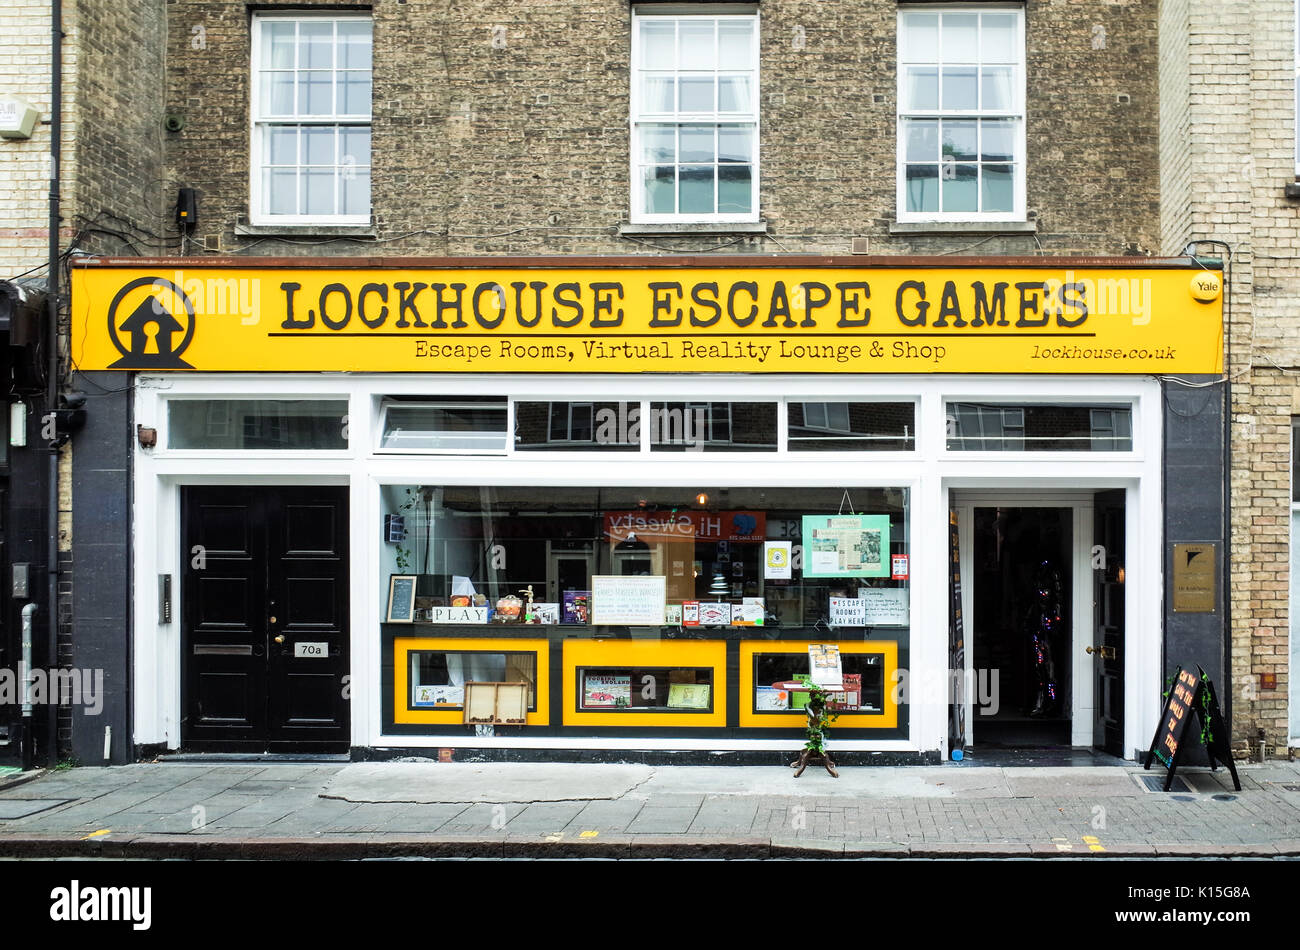 Lockhouse Escape Spiele in Cambridge, spezialisiert auf escape spiele, virtuelle Realität, Brettspiele und Puzzles. Stockfoto